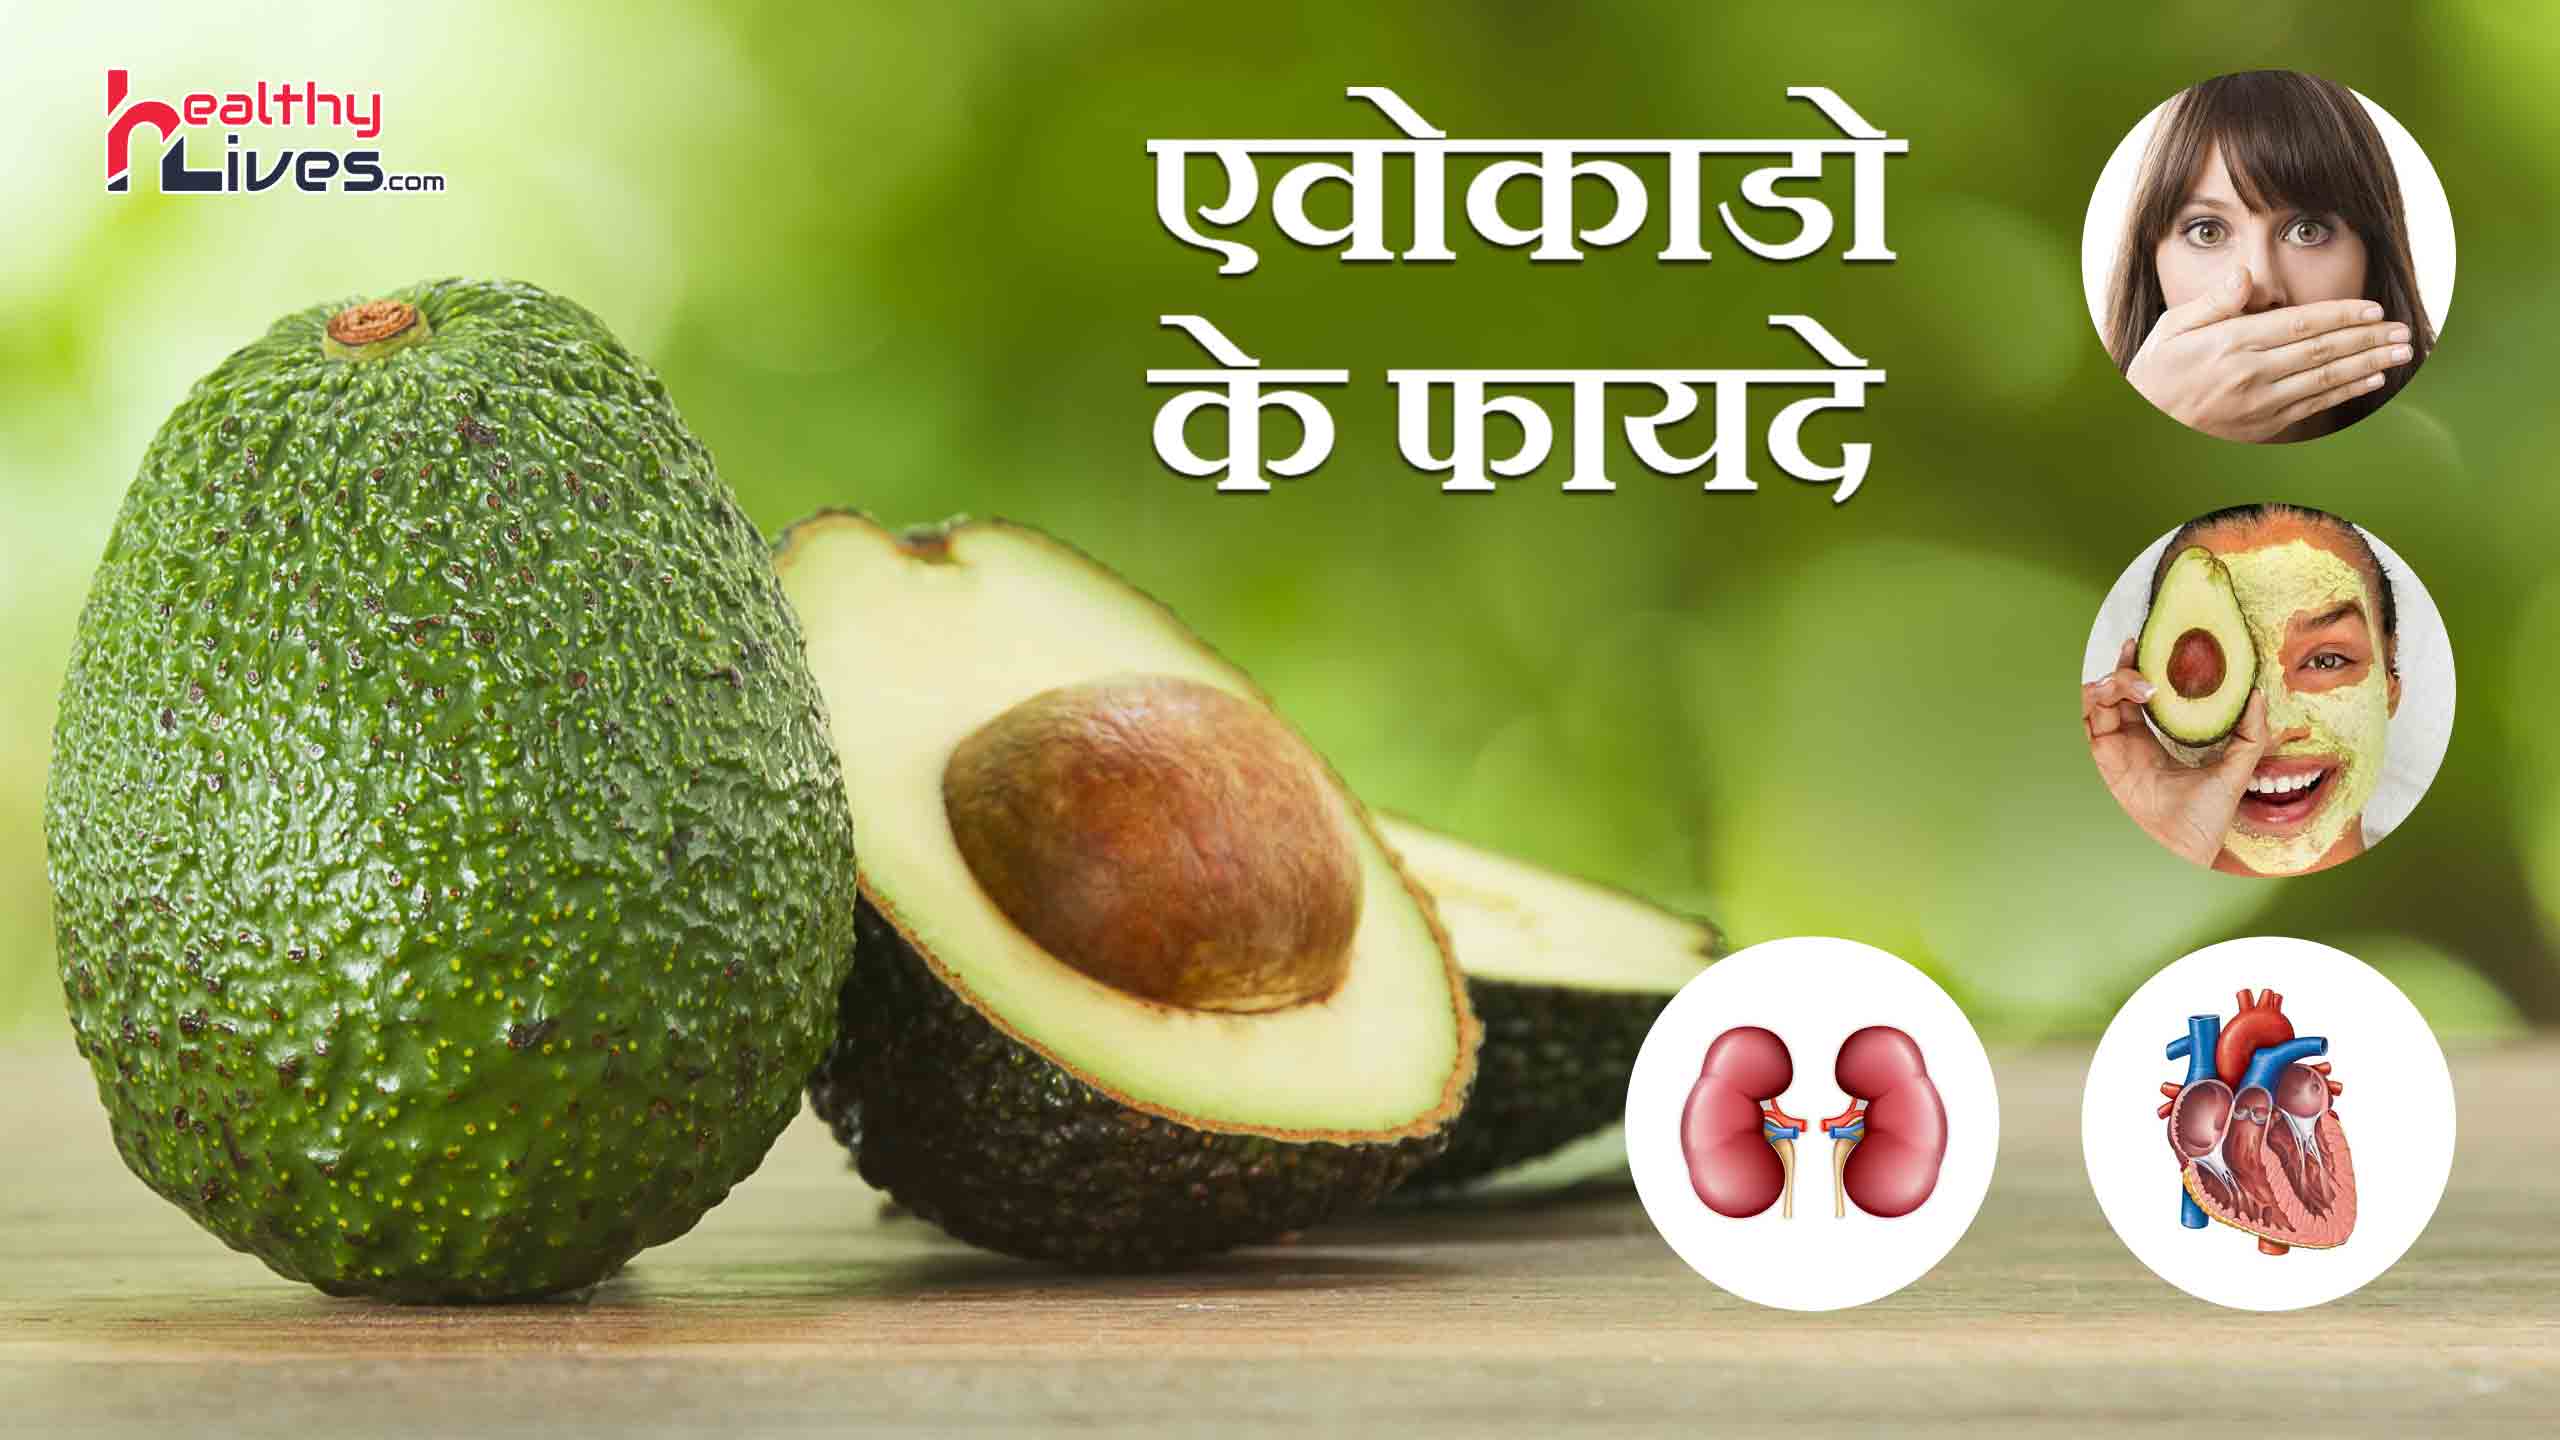 Avocado Benefits in Hindi: एवोकाडो का सेवन करना है लाभकारी